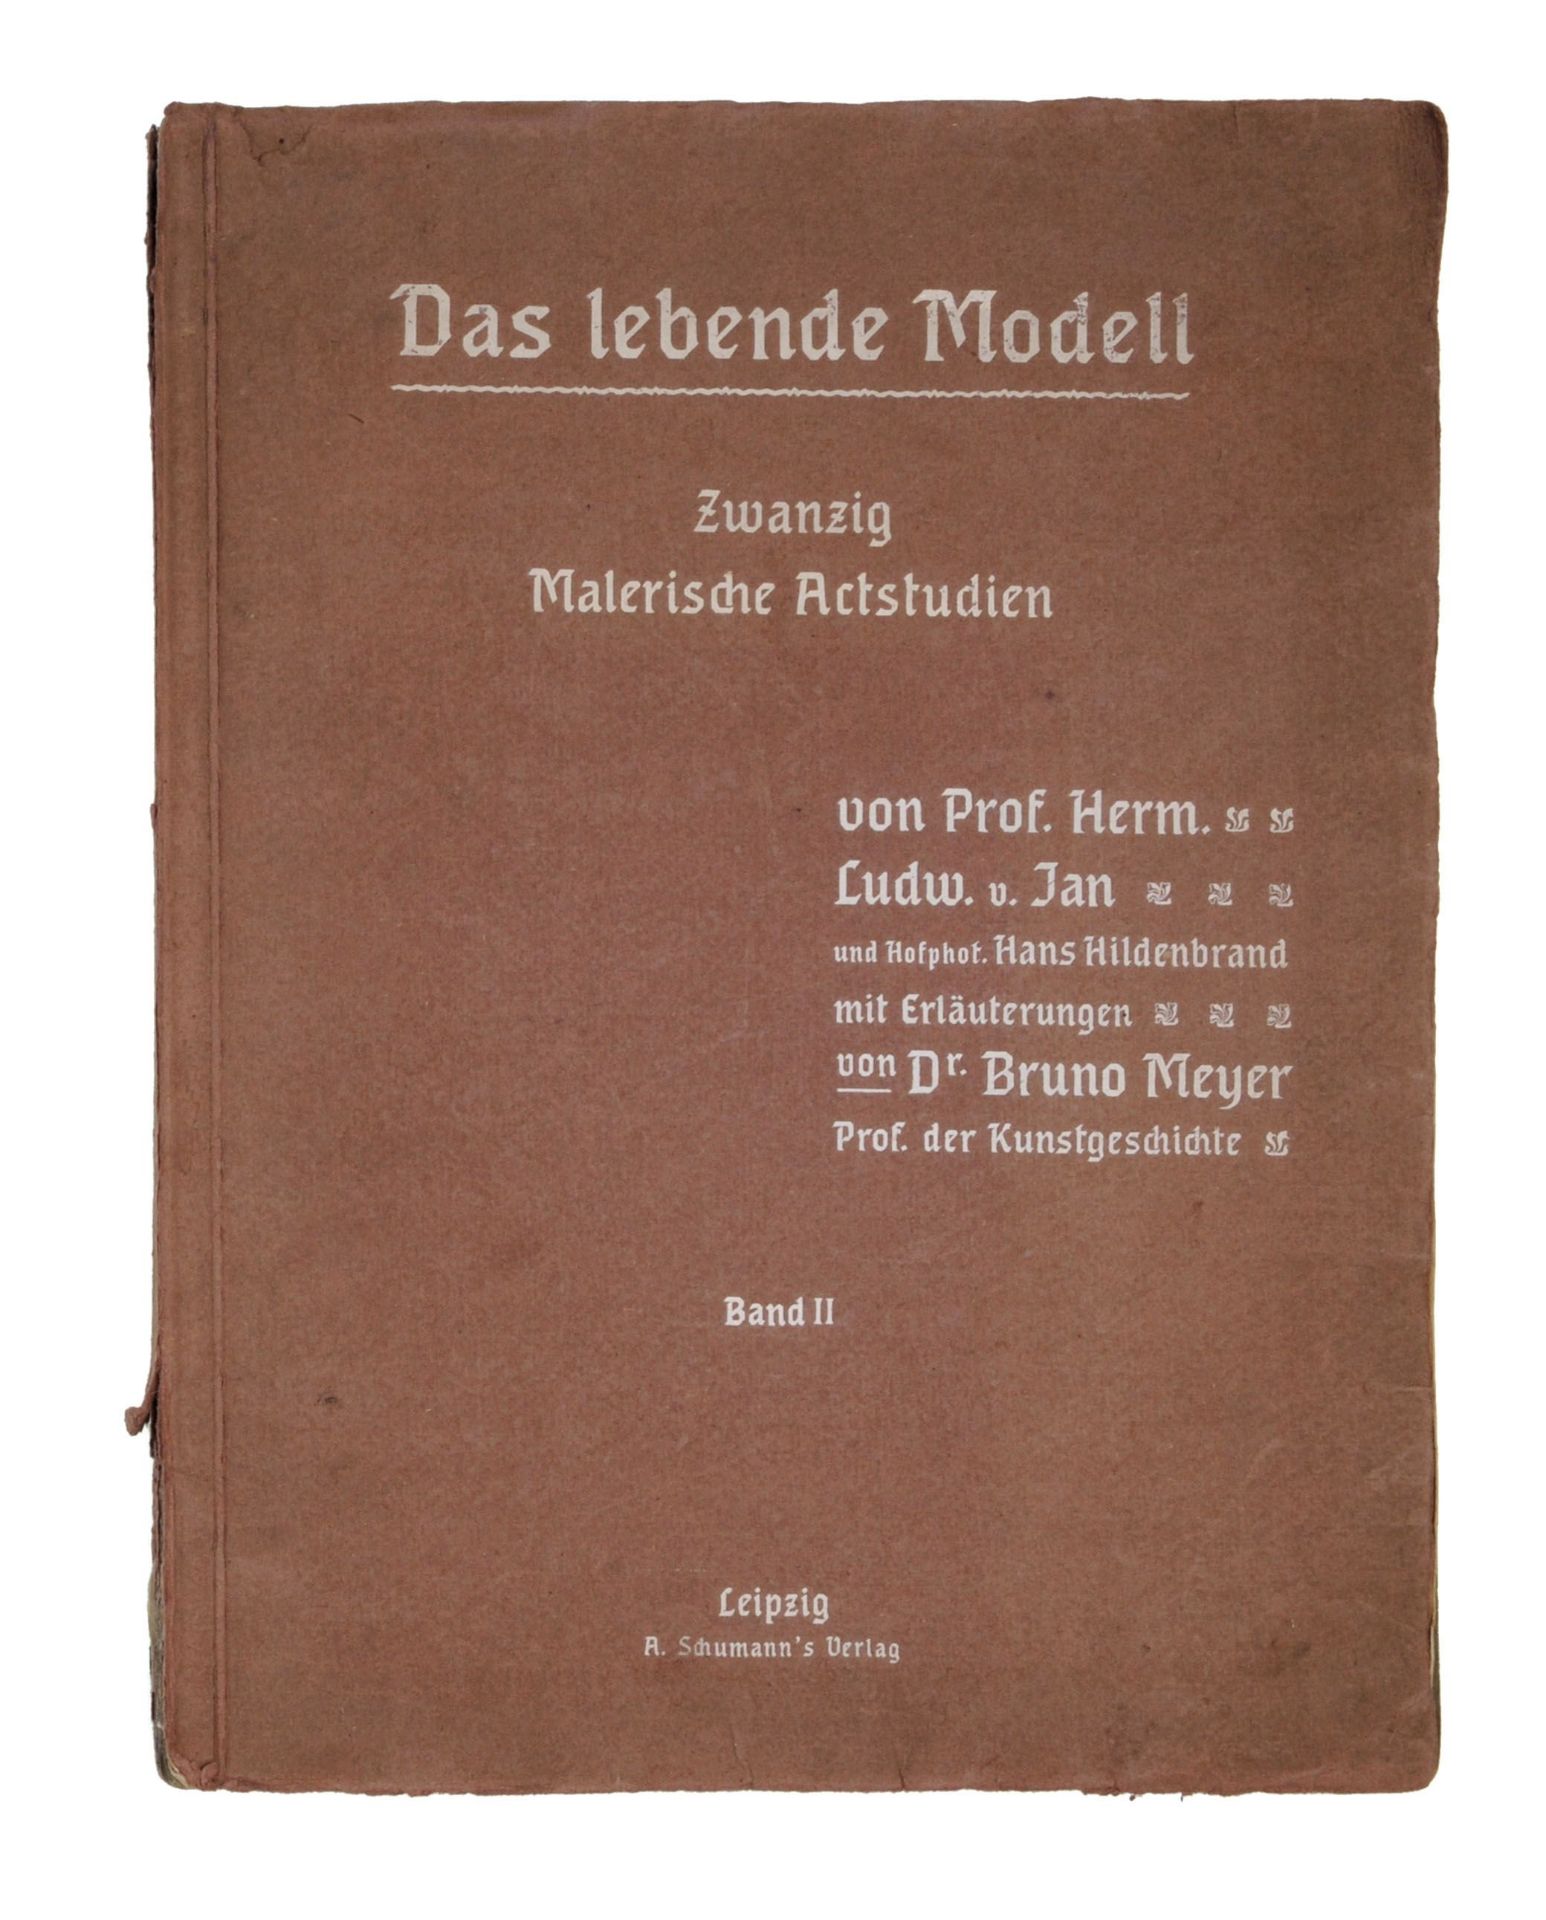 Hermann Ludwig von Jan "Das lebende Modell – Zwanzig Malerische Actstudien. Band II". 1904.